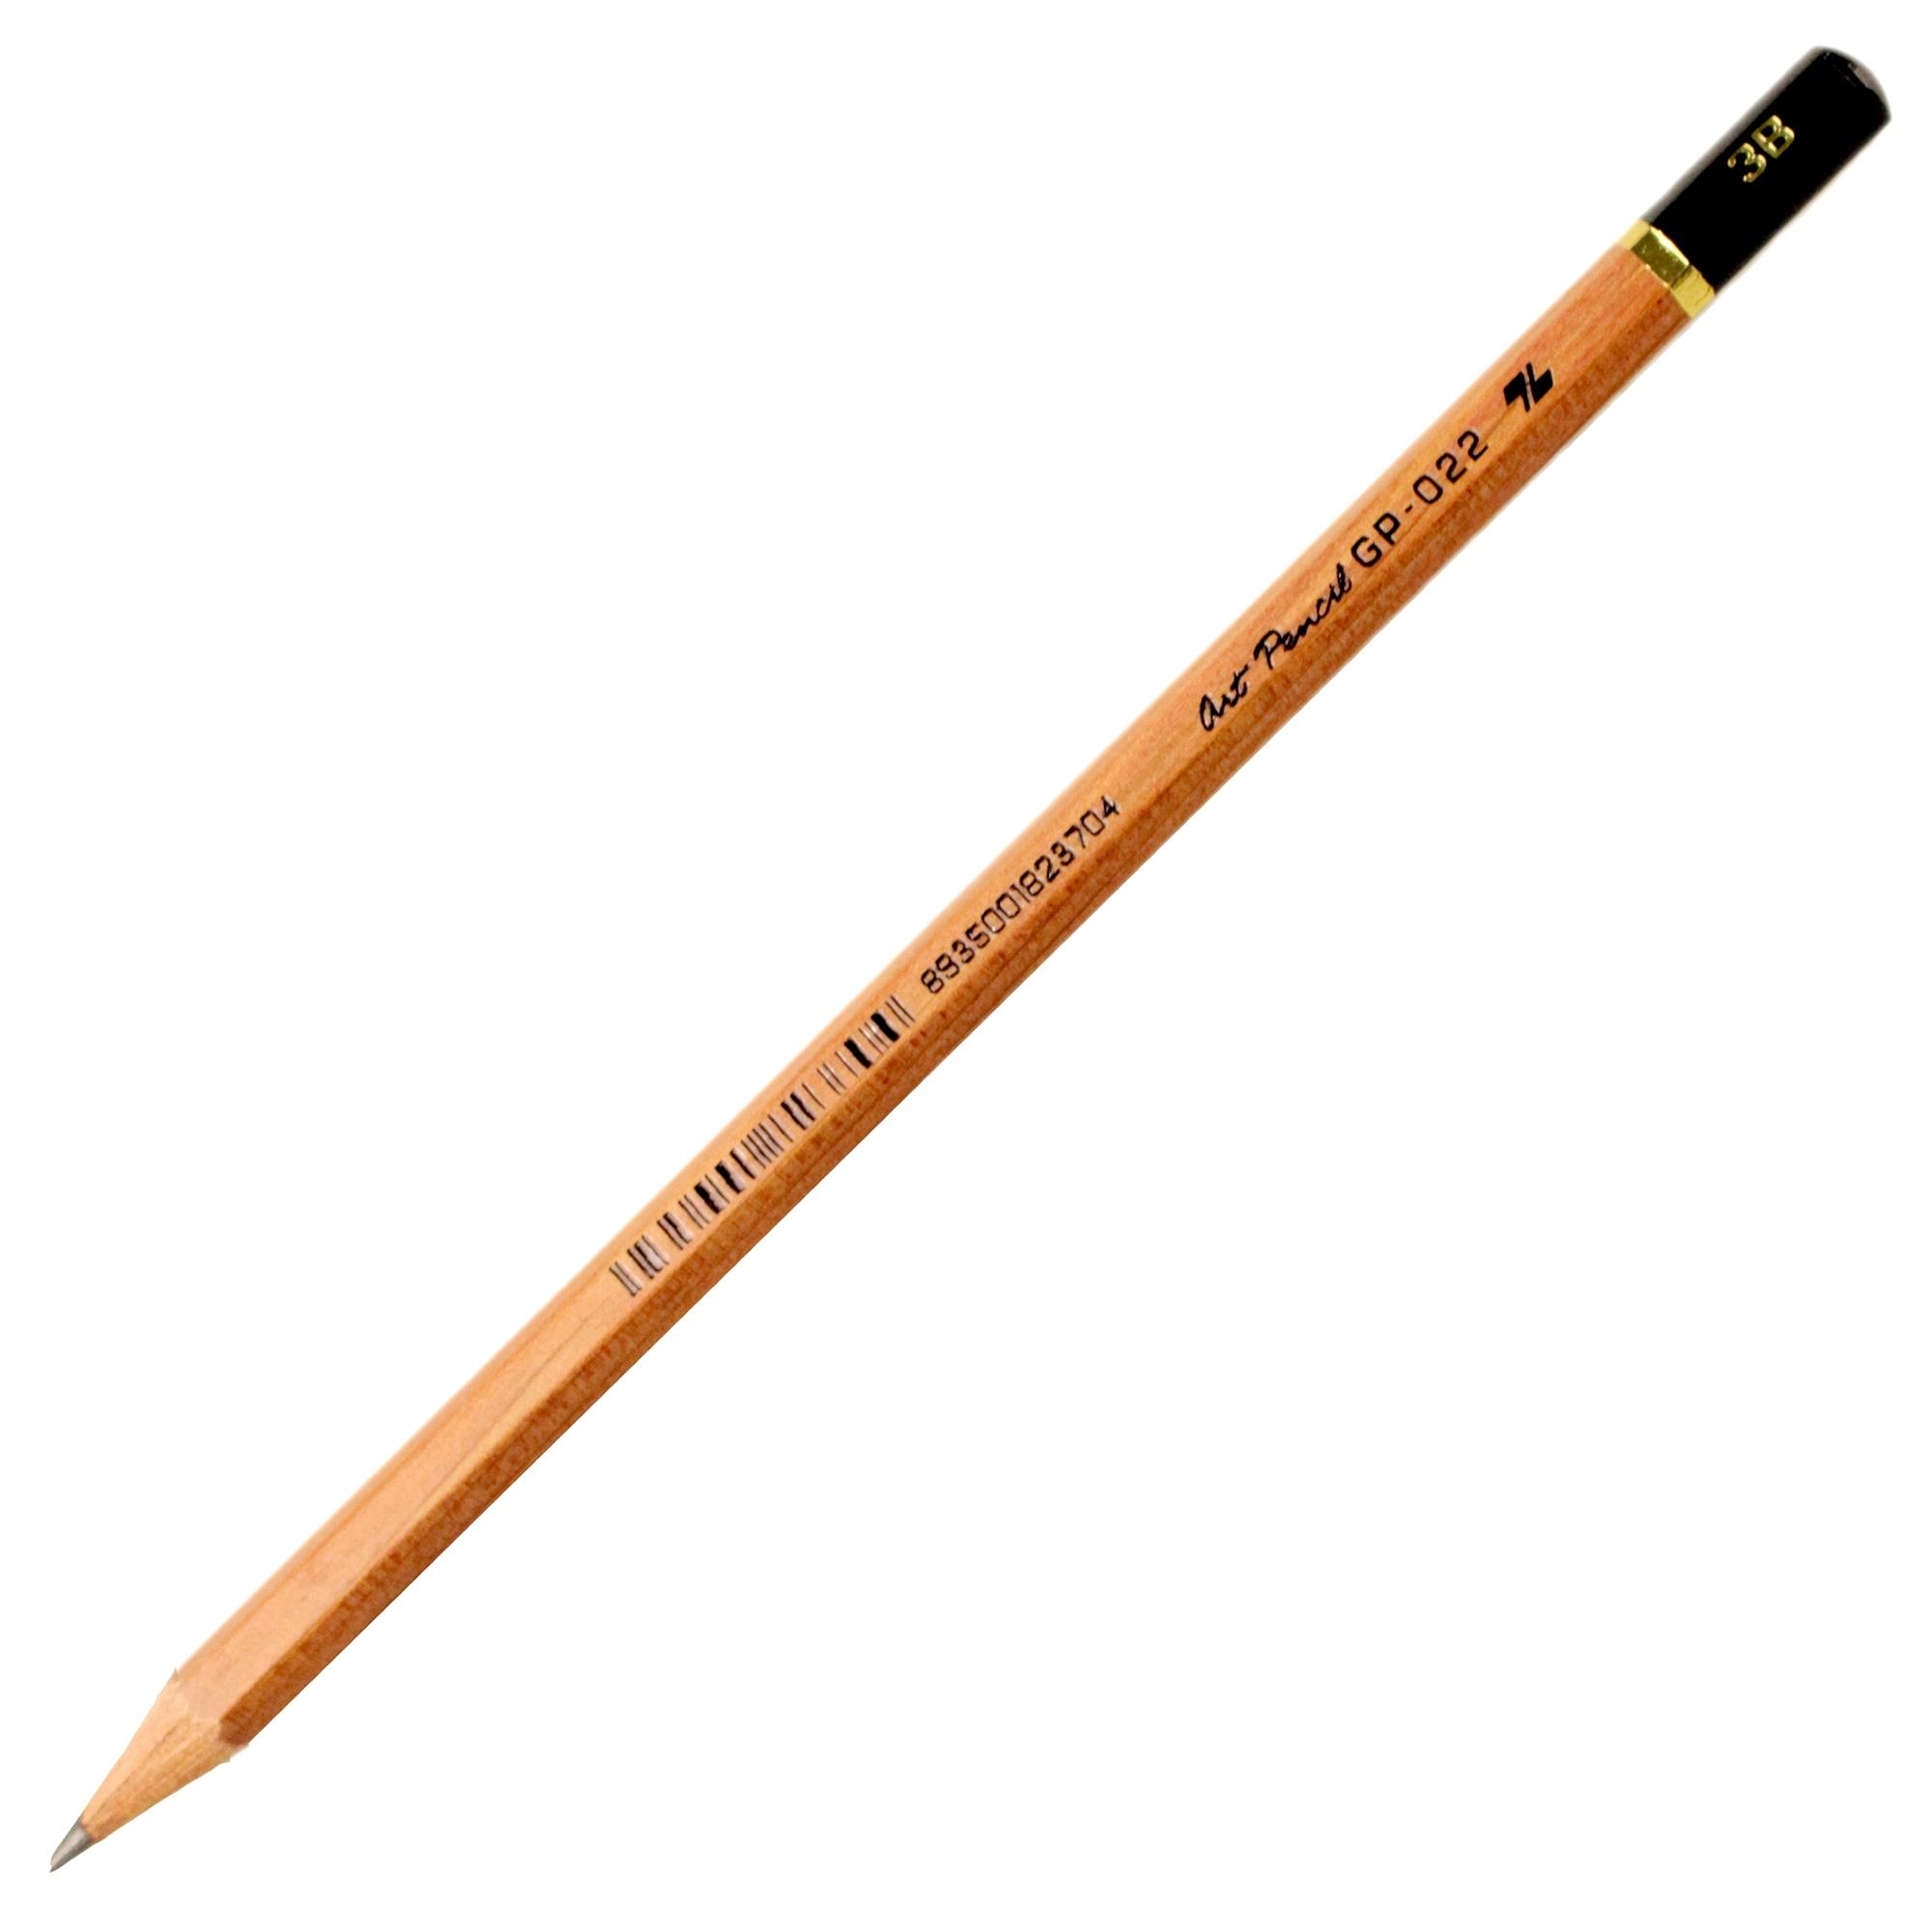 Bút Chì Gỗ 3B Art Pencil Thiên Long GP-022 - Thân Nâu